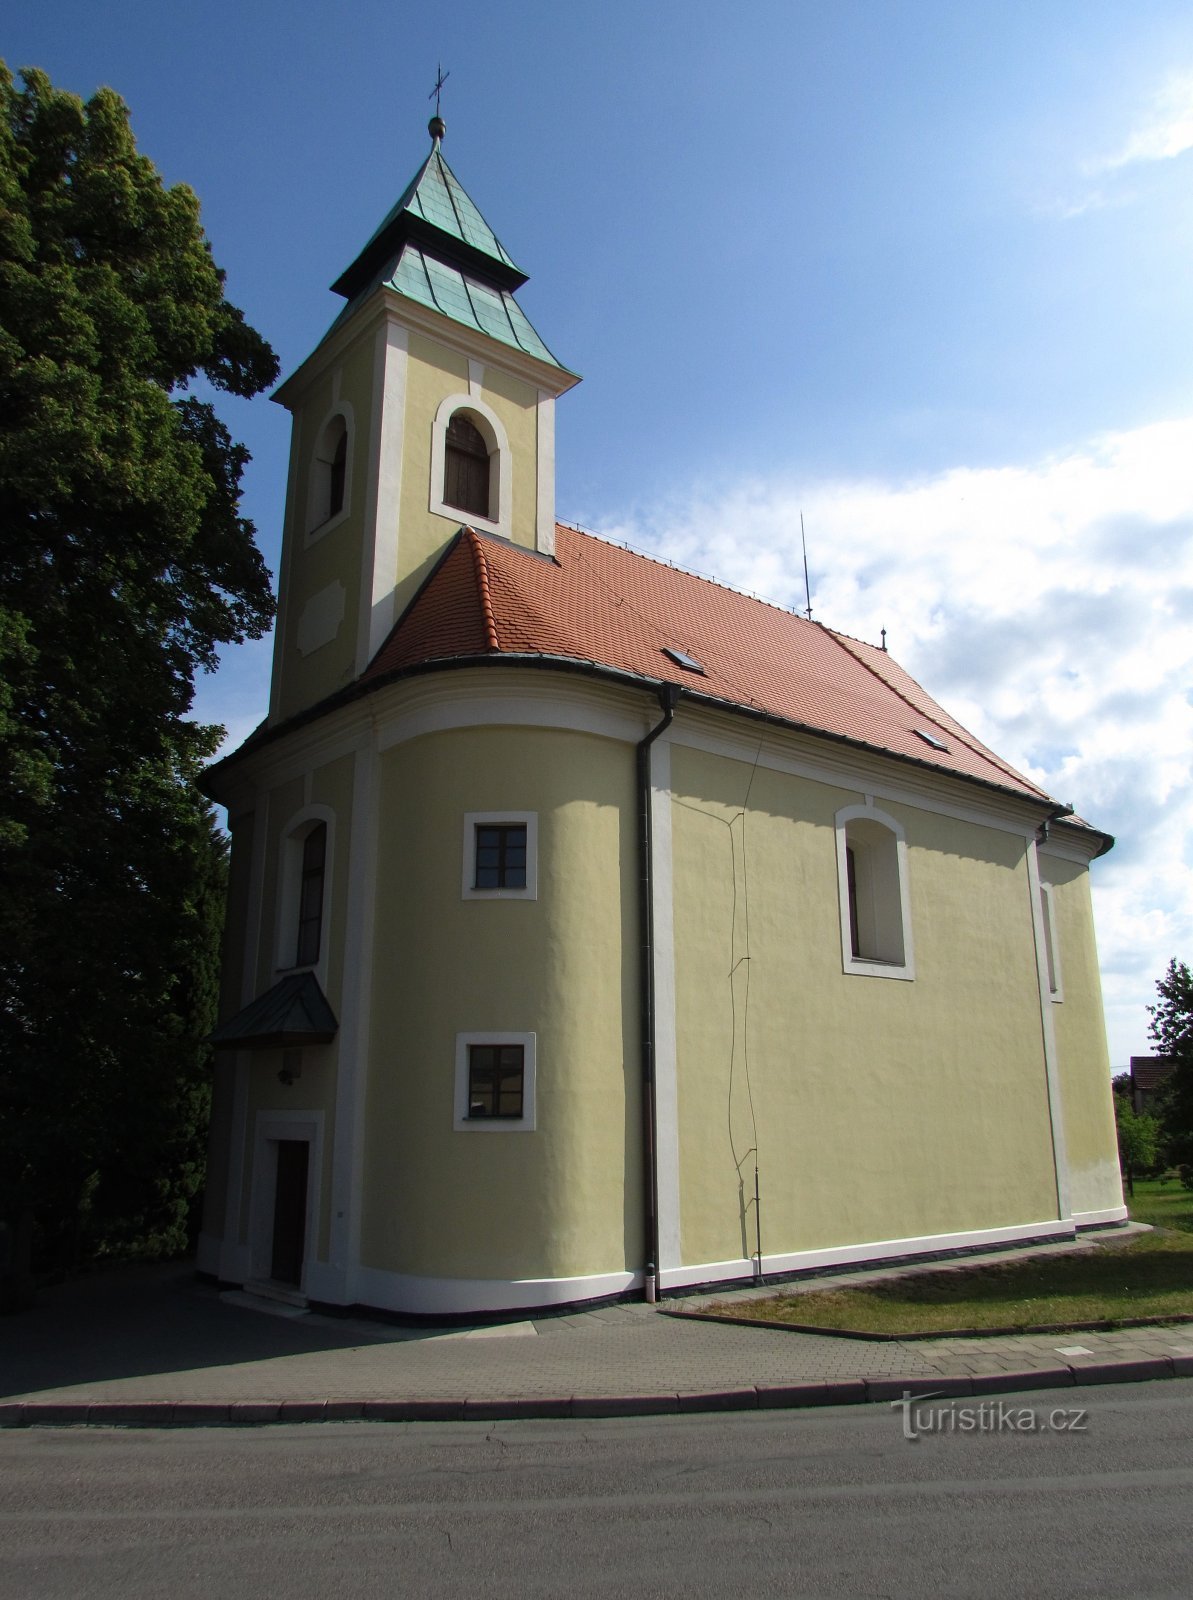 Bukovinka - Cerkev Vnebovzetja Device Marije